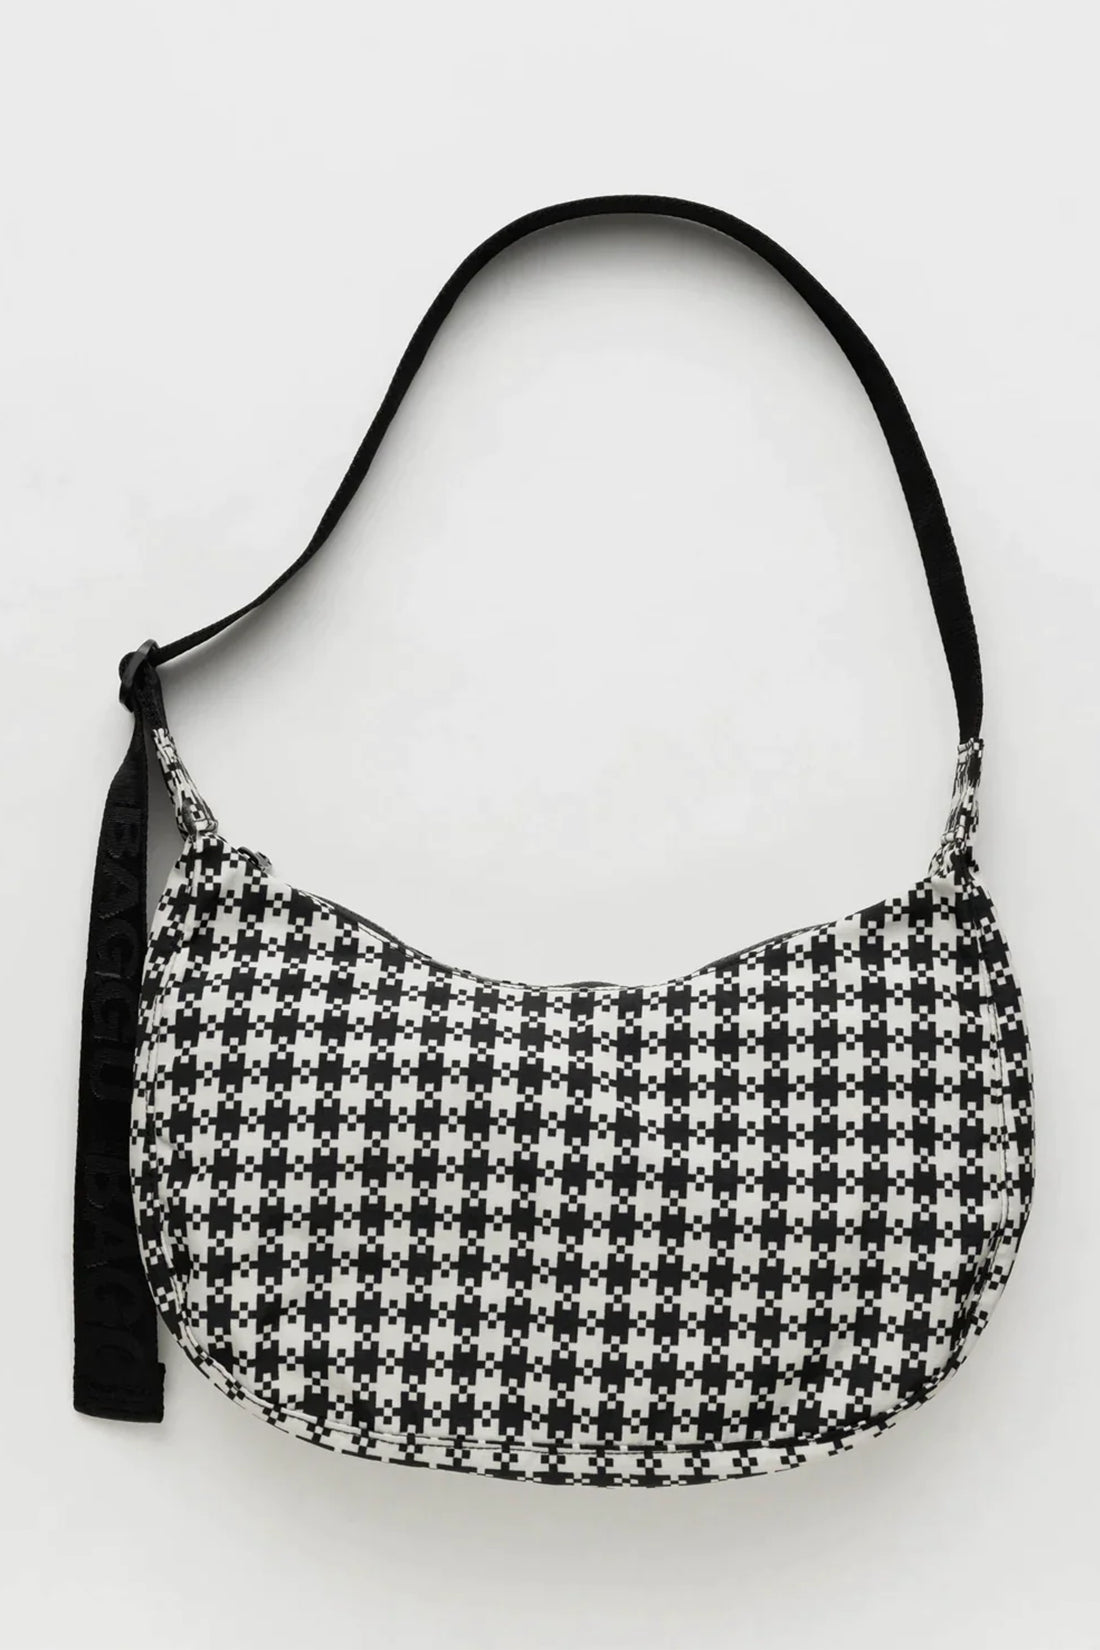 Medium Nylon Crescent Bag - Black & White Gingham